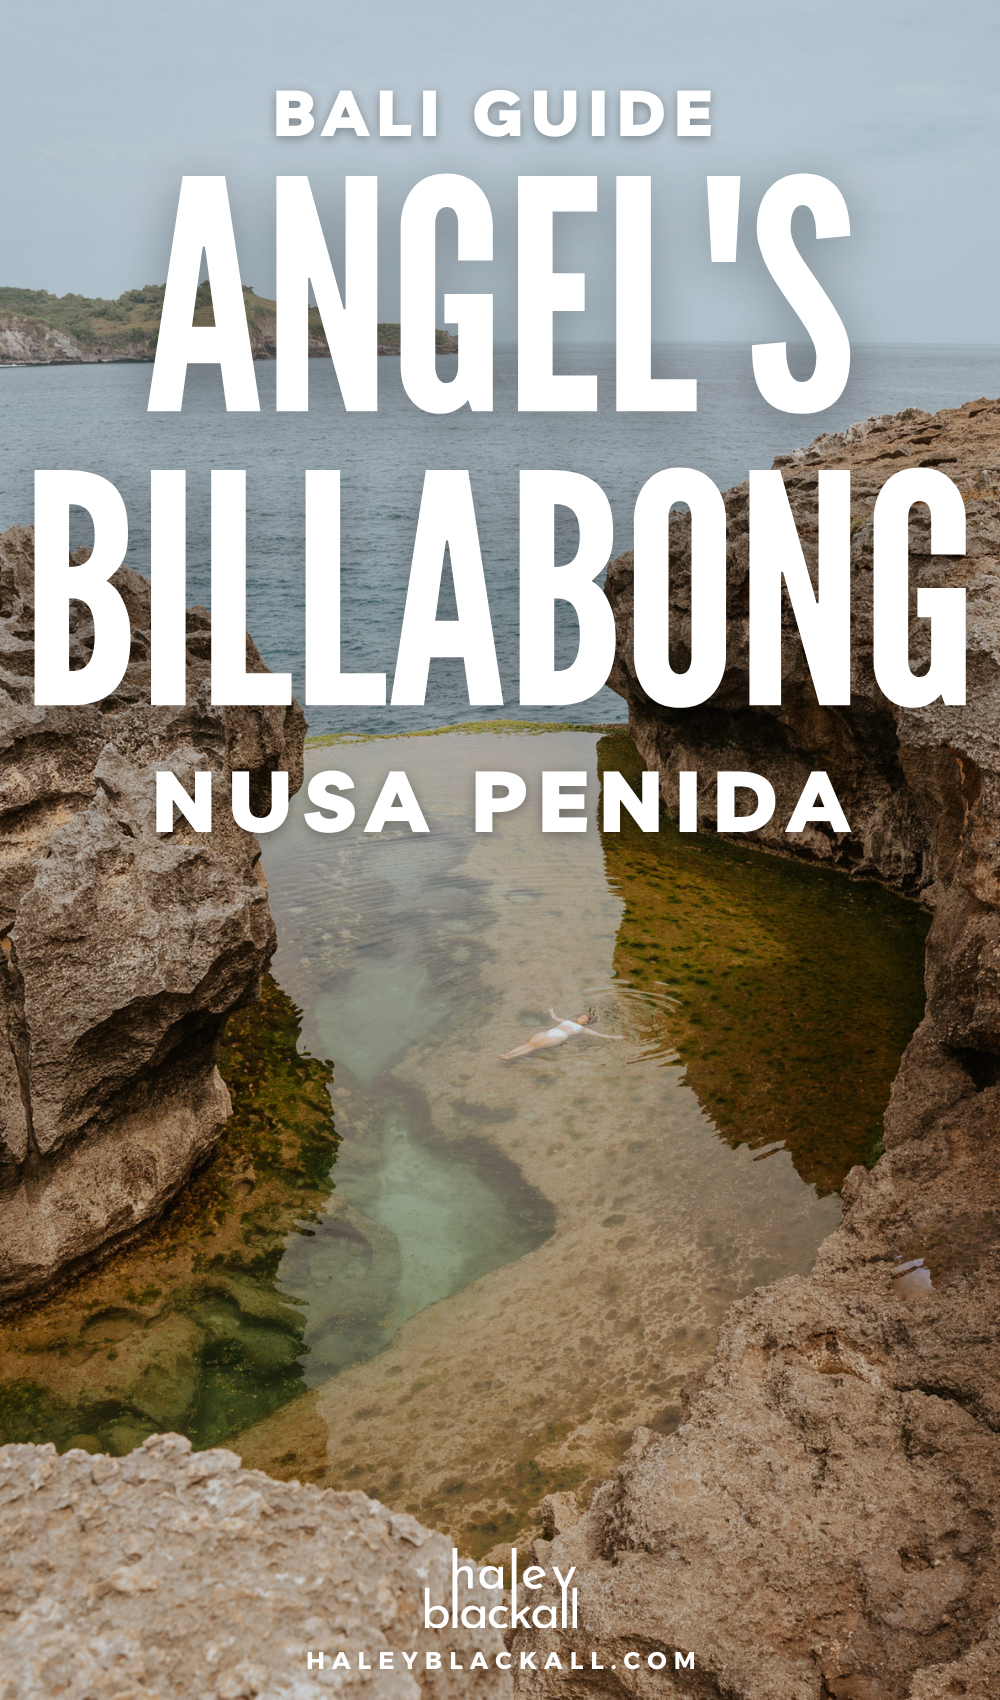 Angel's Billabong Nusa Penida